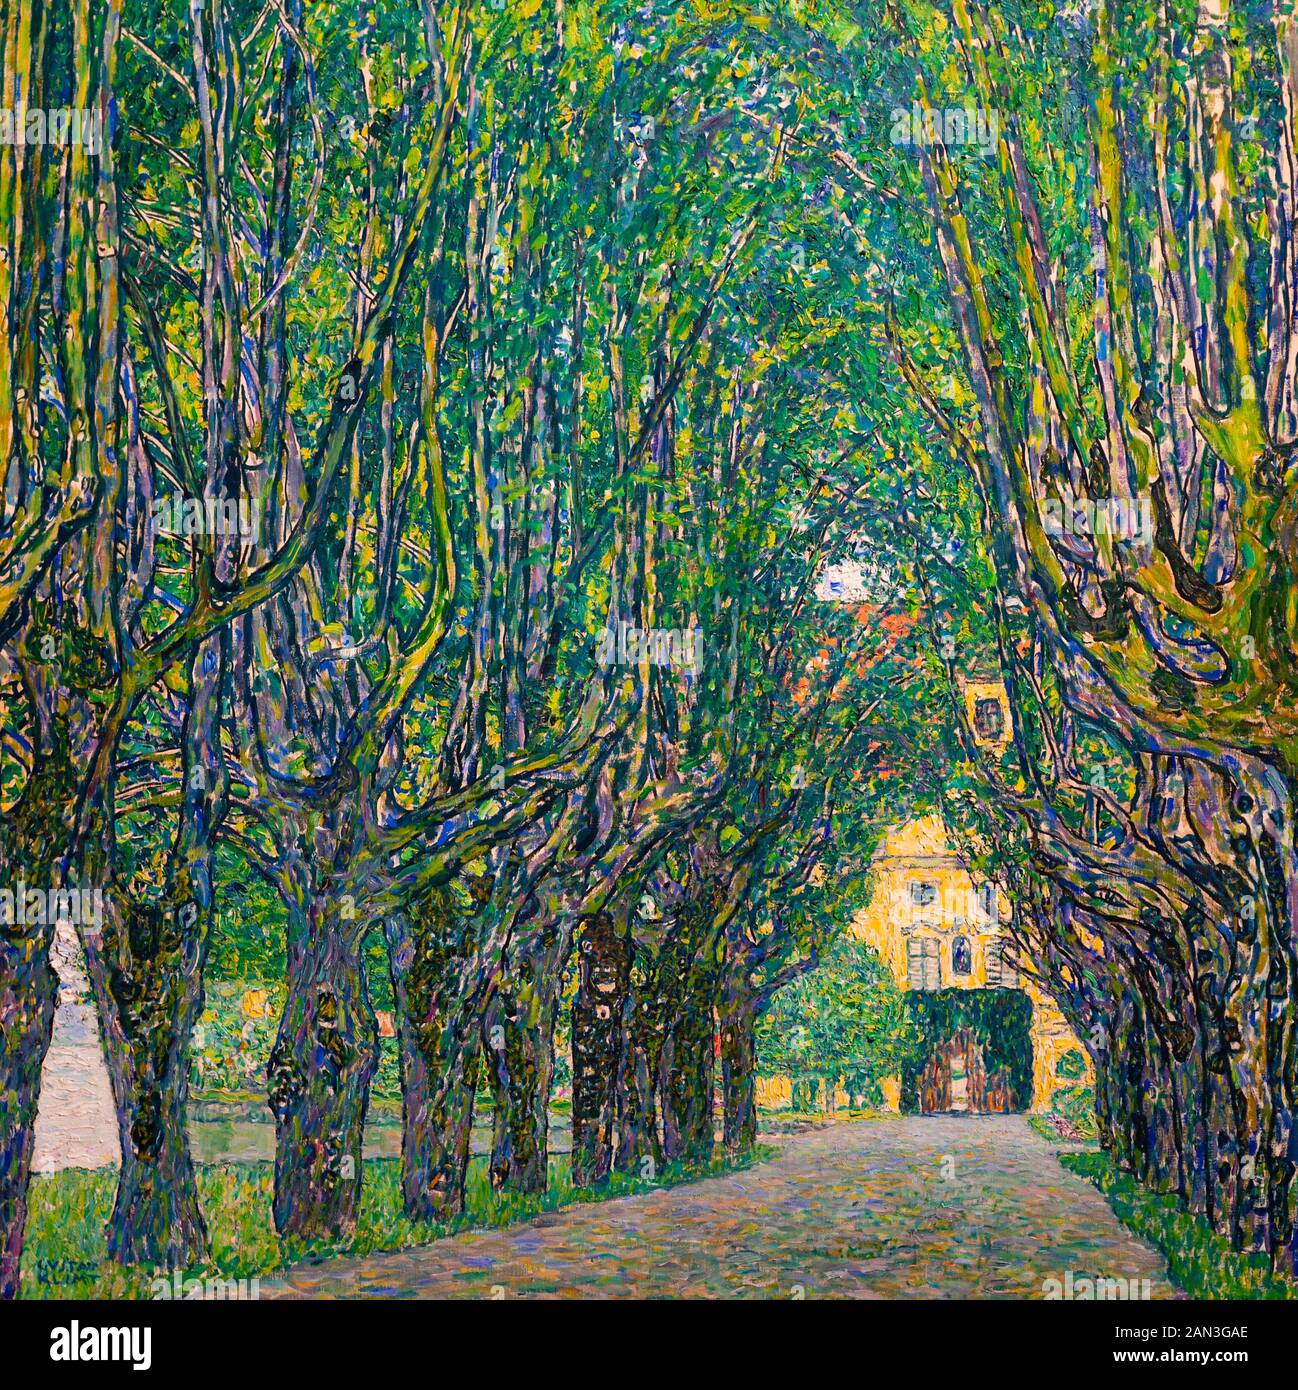 Avenue à Schloss Kammer (Avenue du Parc à Kammer Palace). 1912. Par le peintre symboliste autrichien Gustav Klimt. Musée du Belvédère, Vienne, Autriche. Banque D'Images